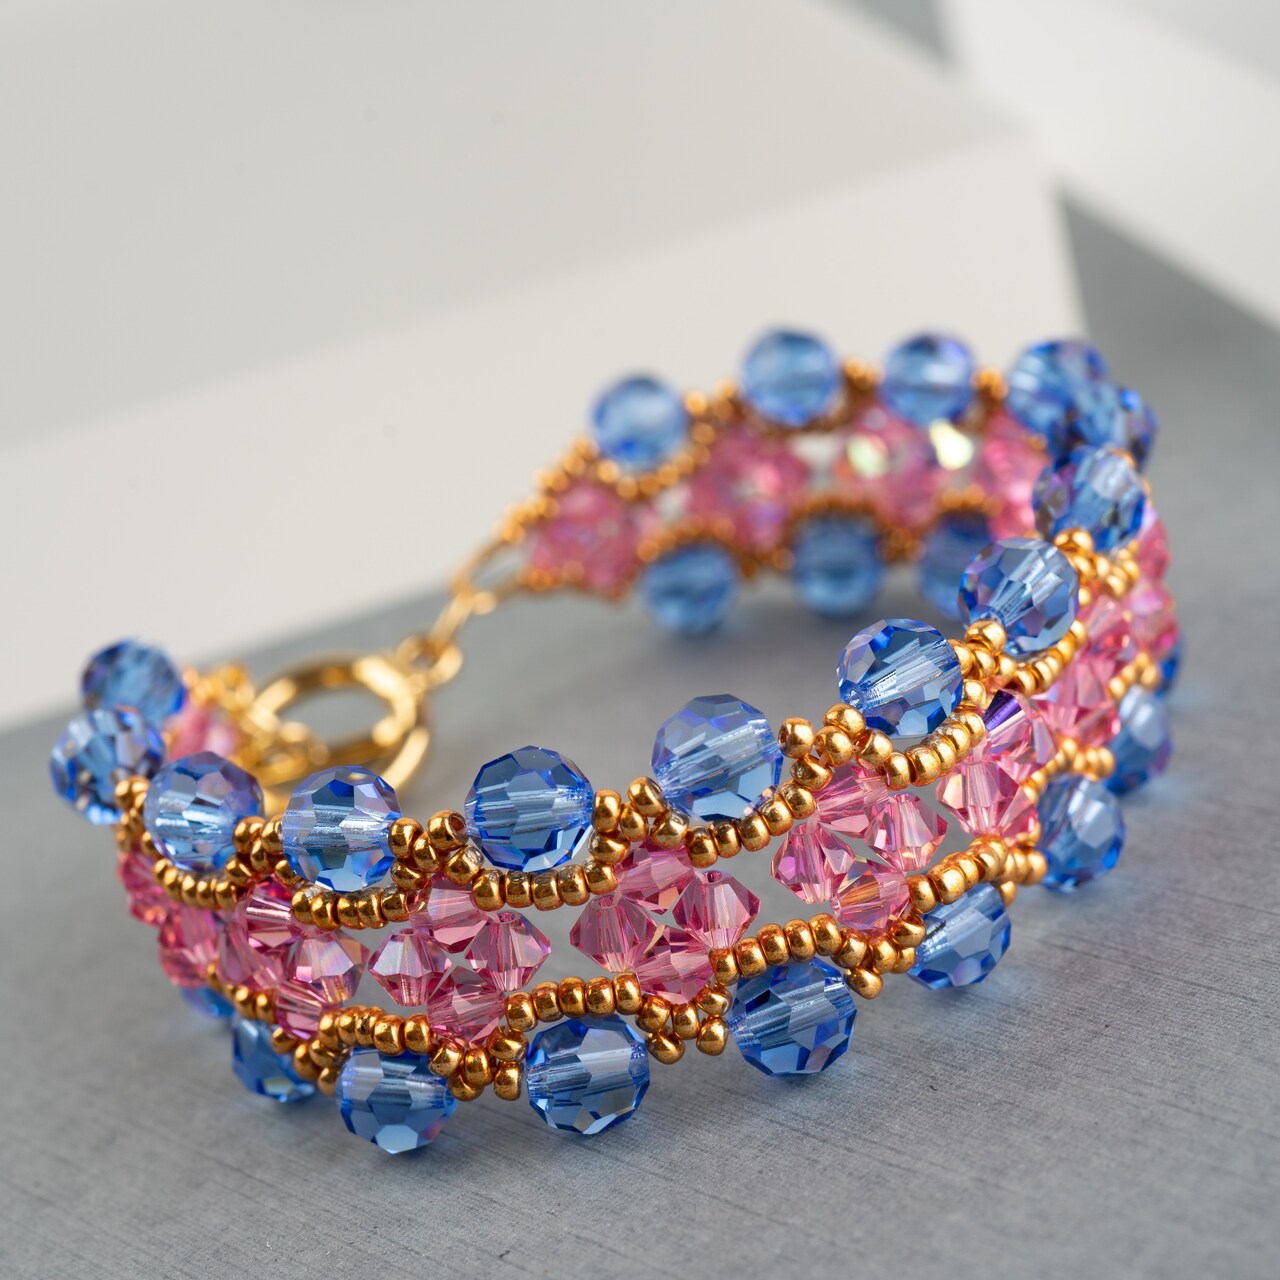 Crystal Crown Bracelet with @daniellewickesjewelry